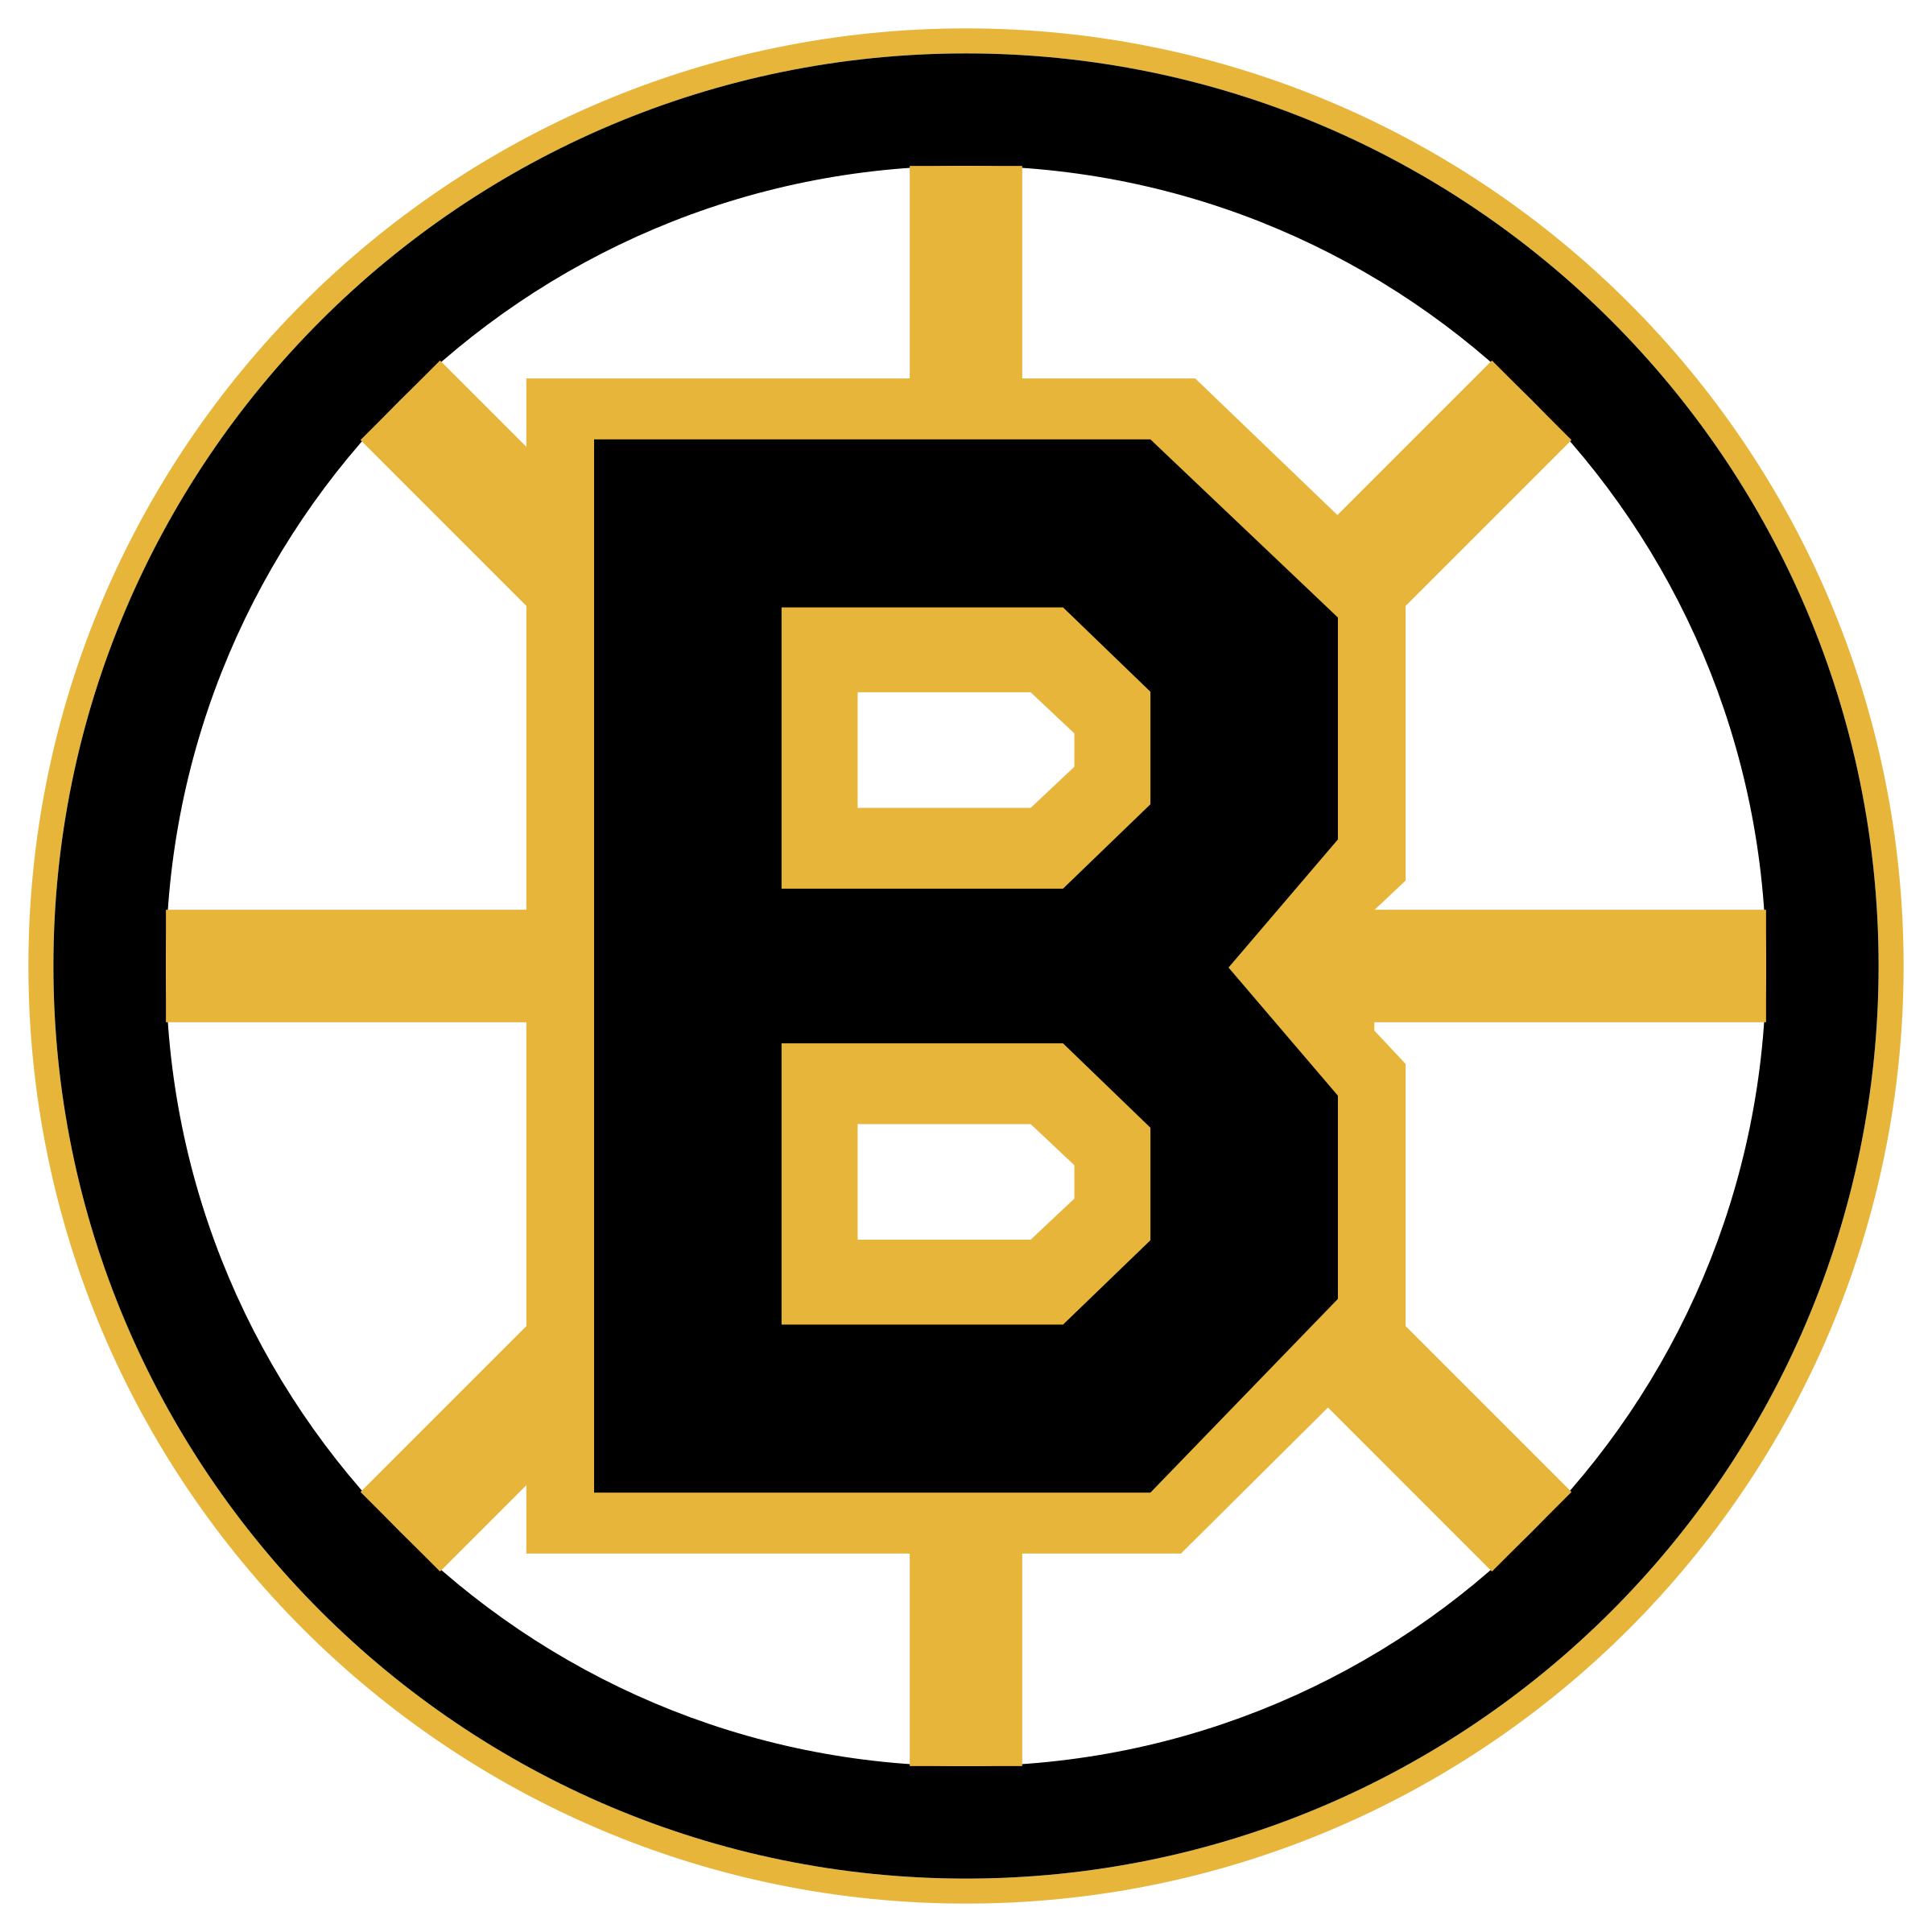 Boston Bruins Logo Download Free PNG